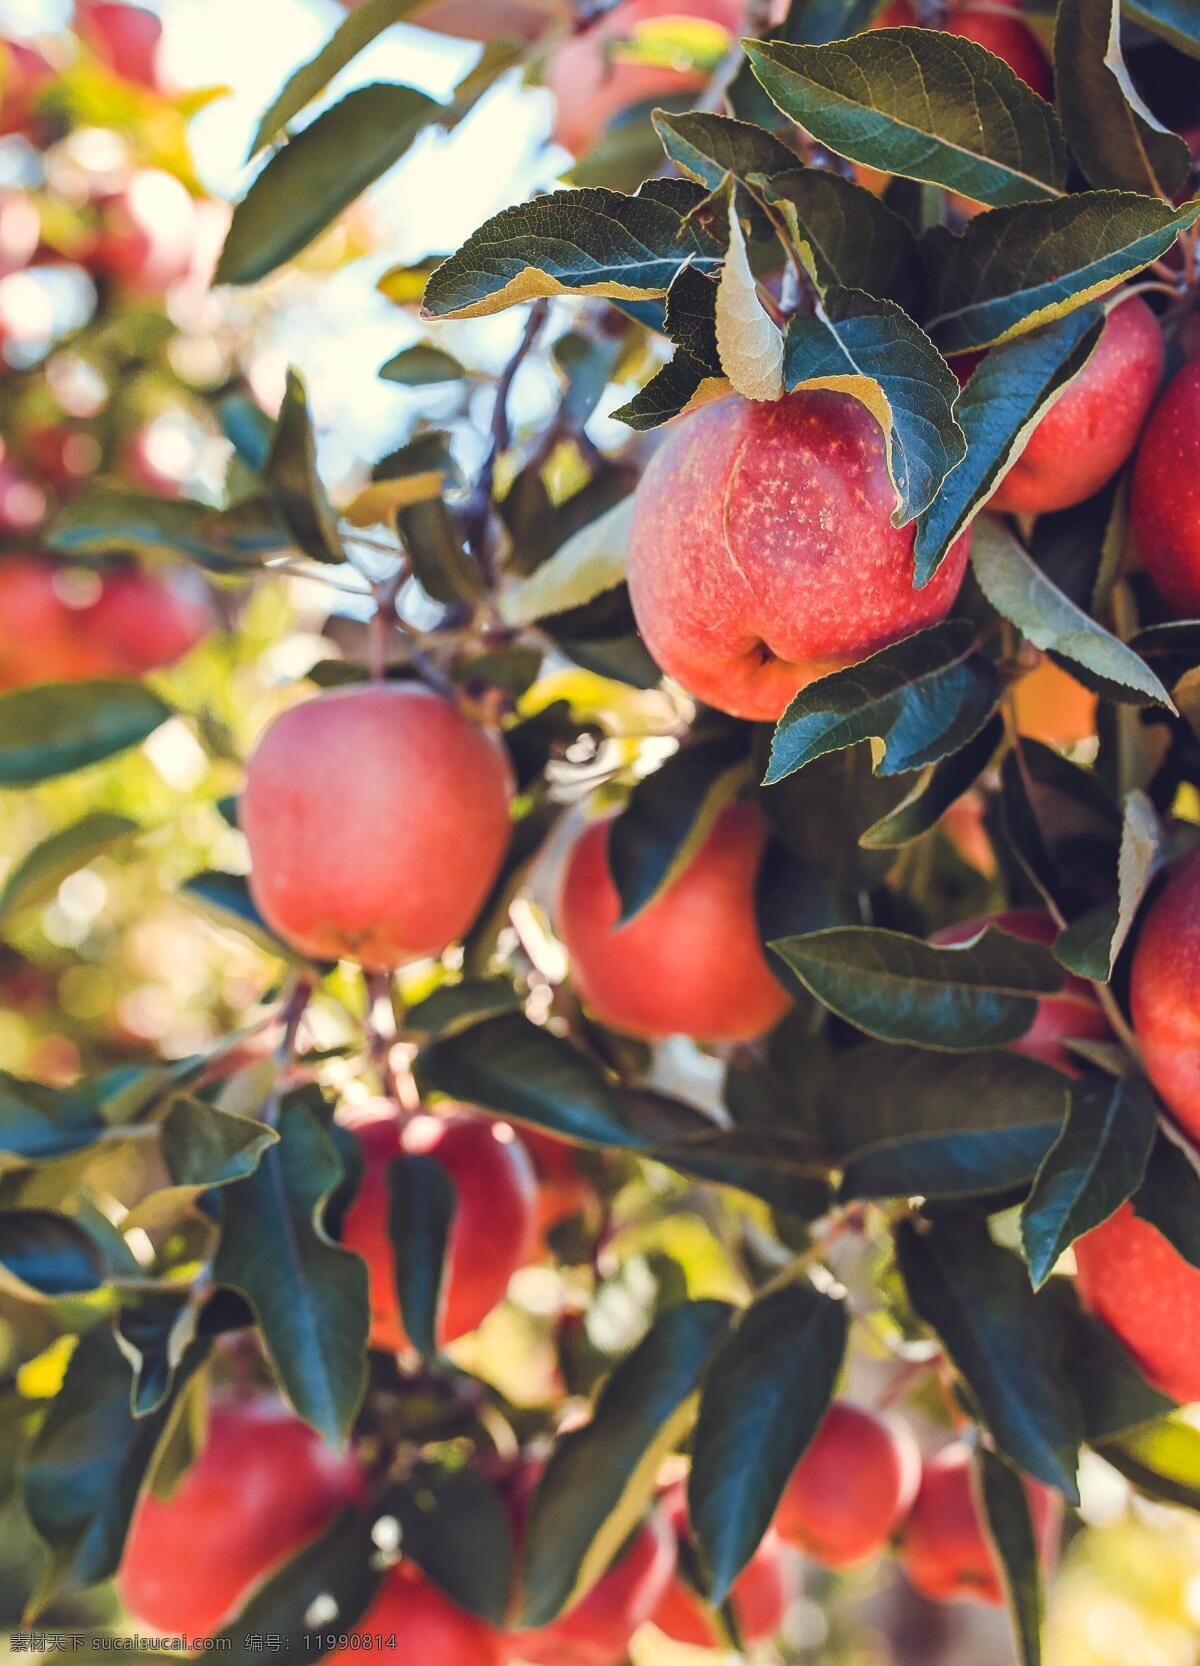 苹果树 鲜红 苹果 红苹果 树上的苹果 没摘的苹果 野生苹果 个大的苹果 鲜红的苹果 红富士 一箱苹果 新鲜苹果 刚摘的苹果 水果 图库果蔬食物 生物世界